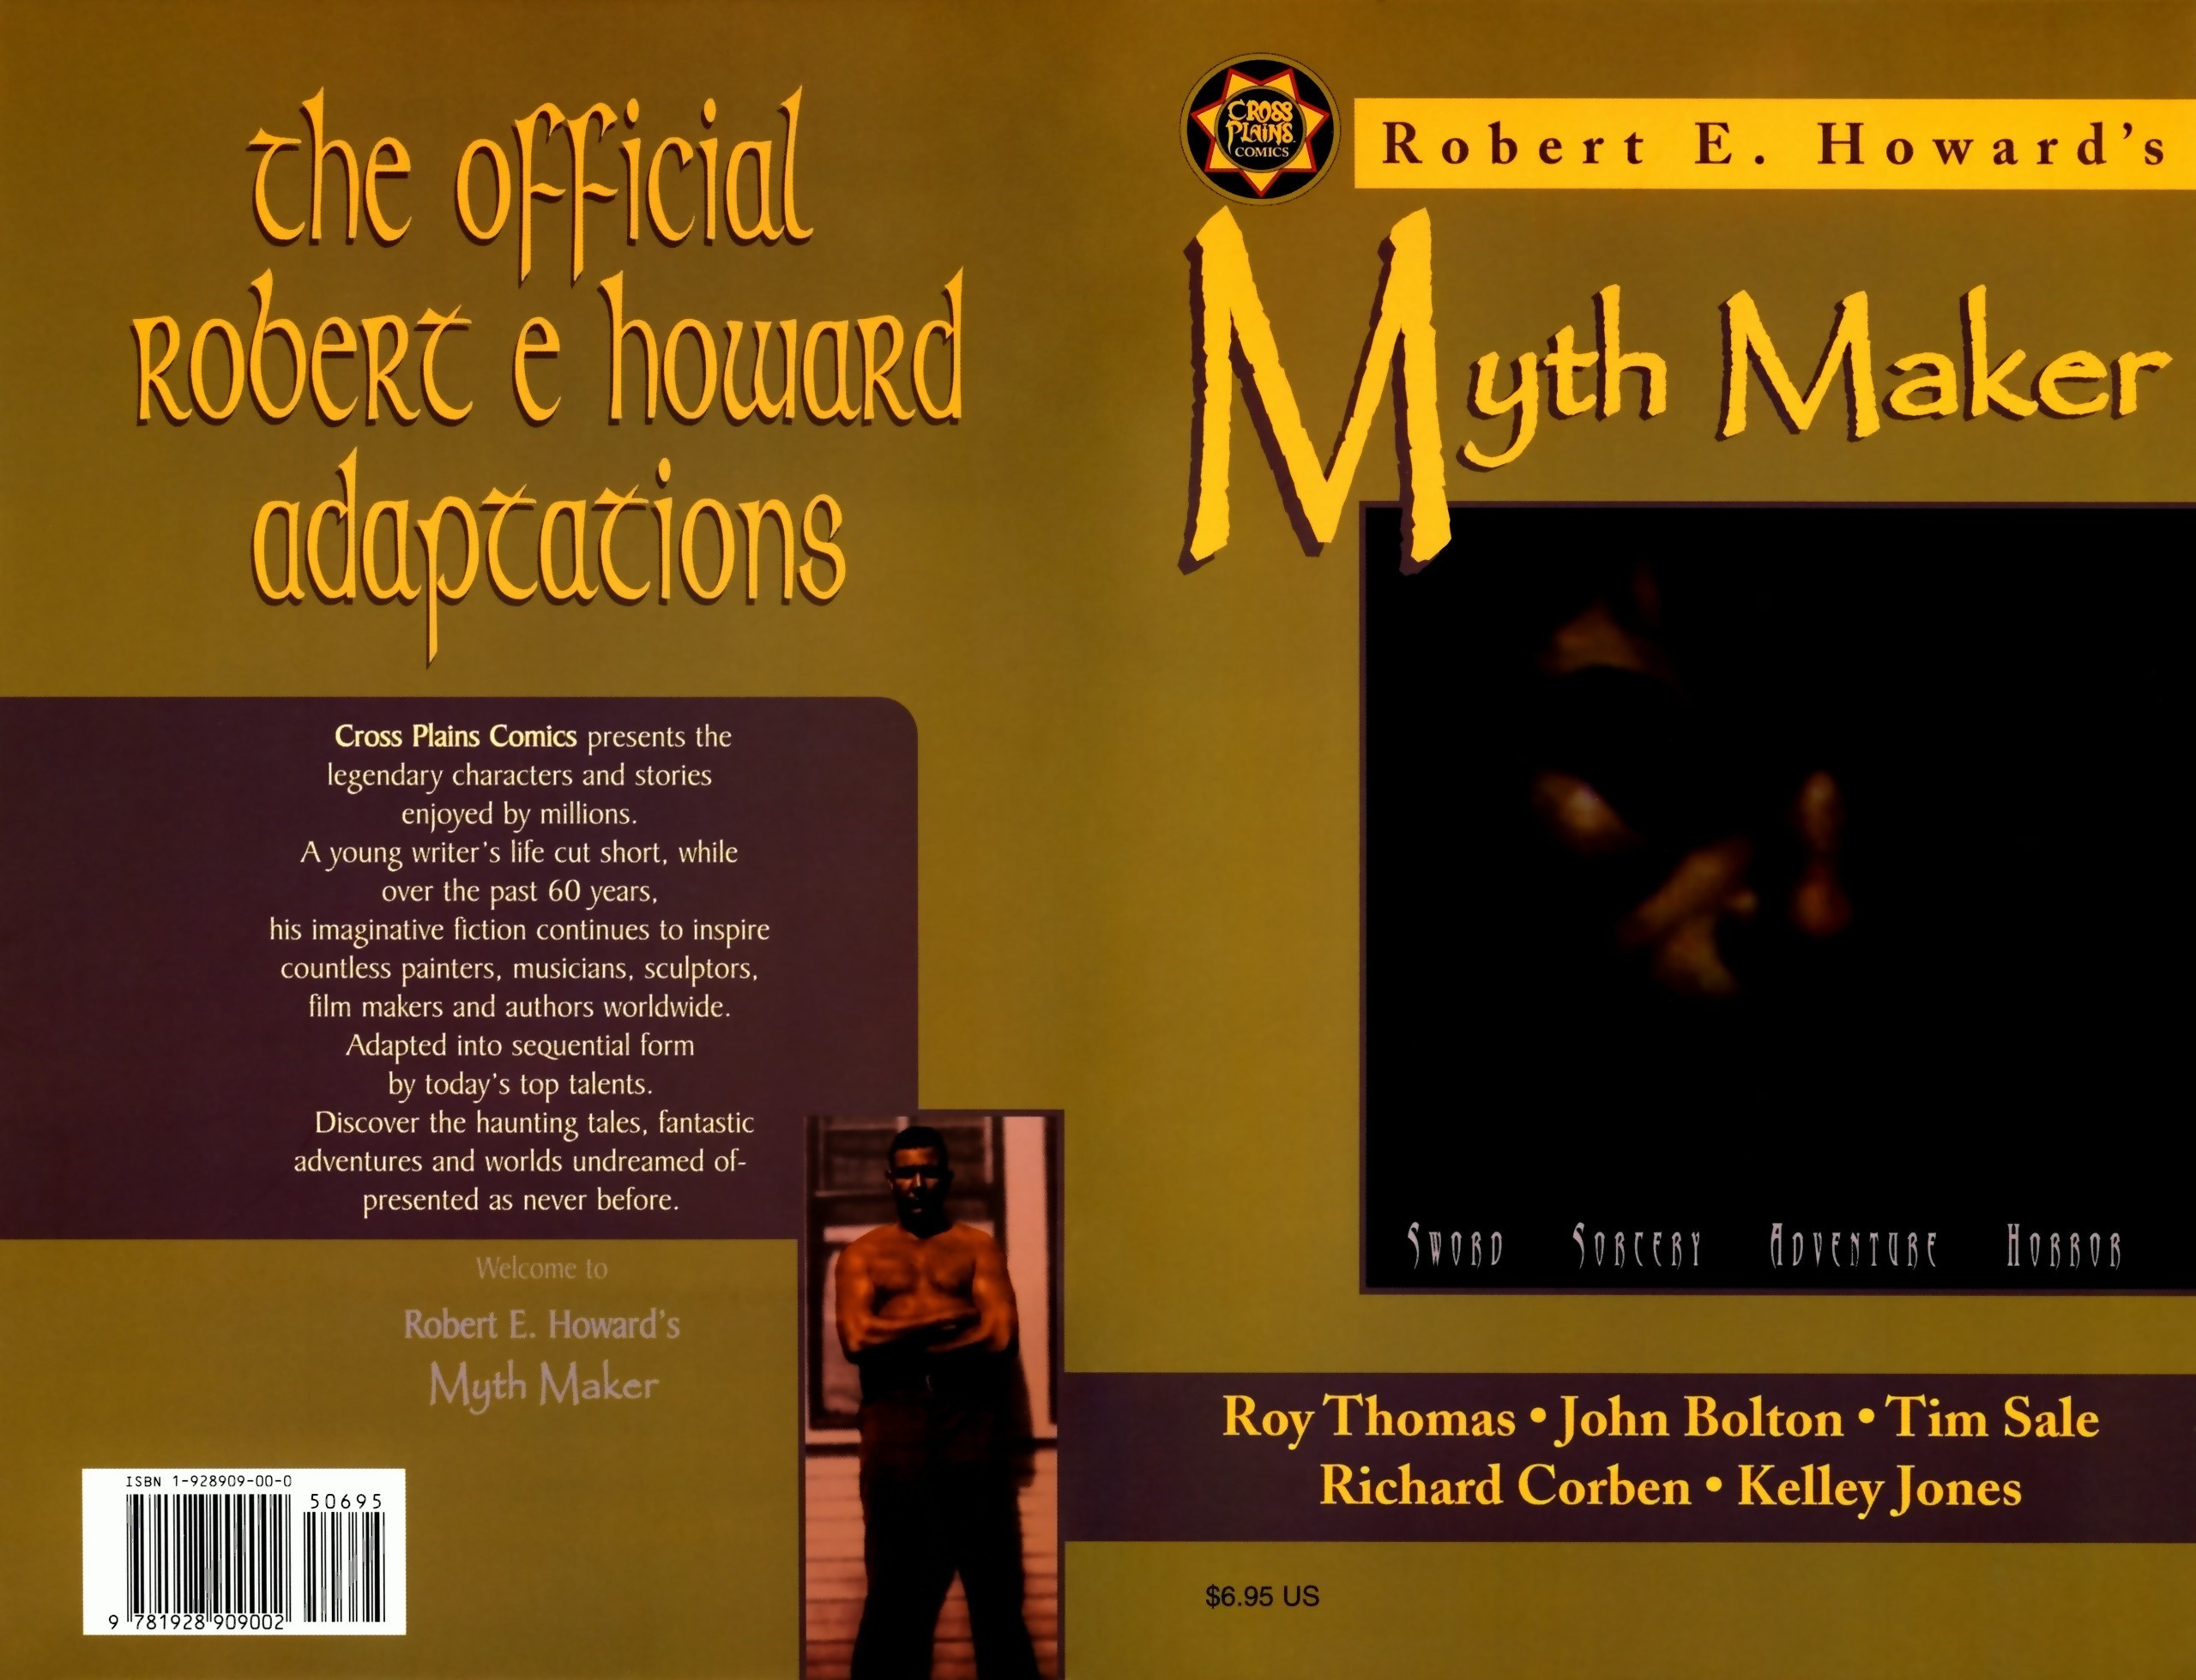 Read online Robert E. Howard's Myth Maker comic -  Issue # TPB - 1